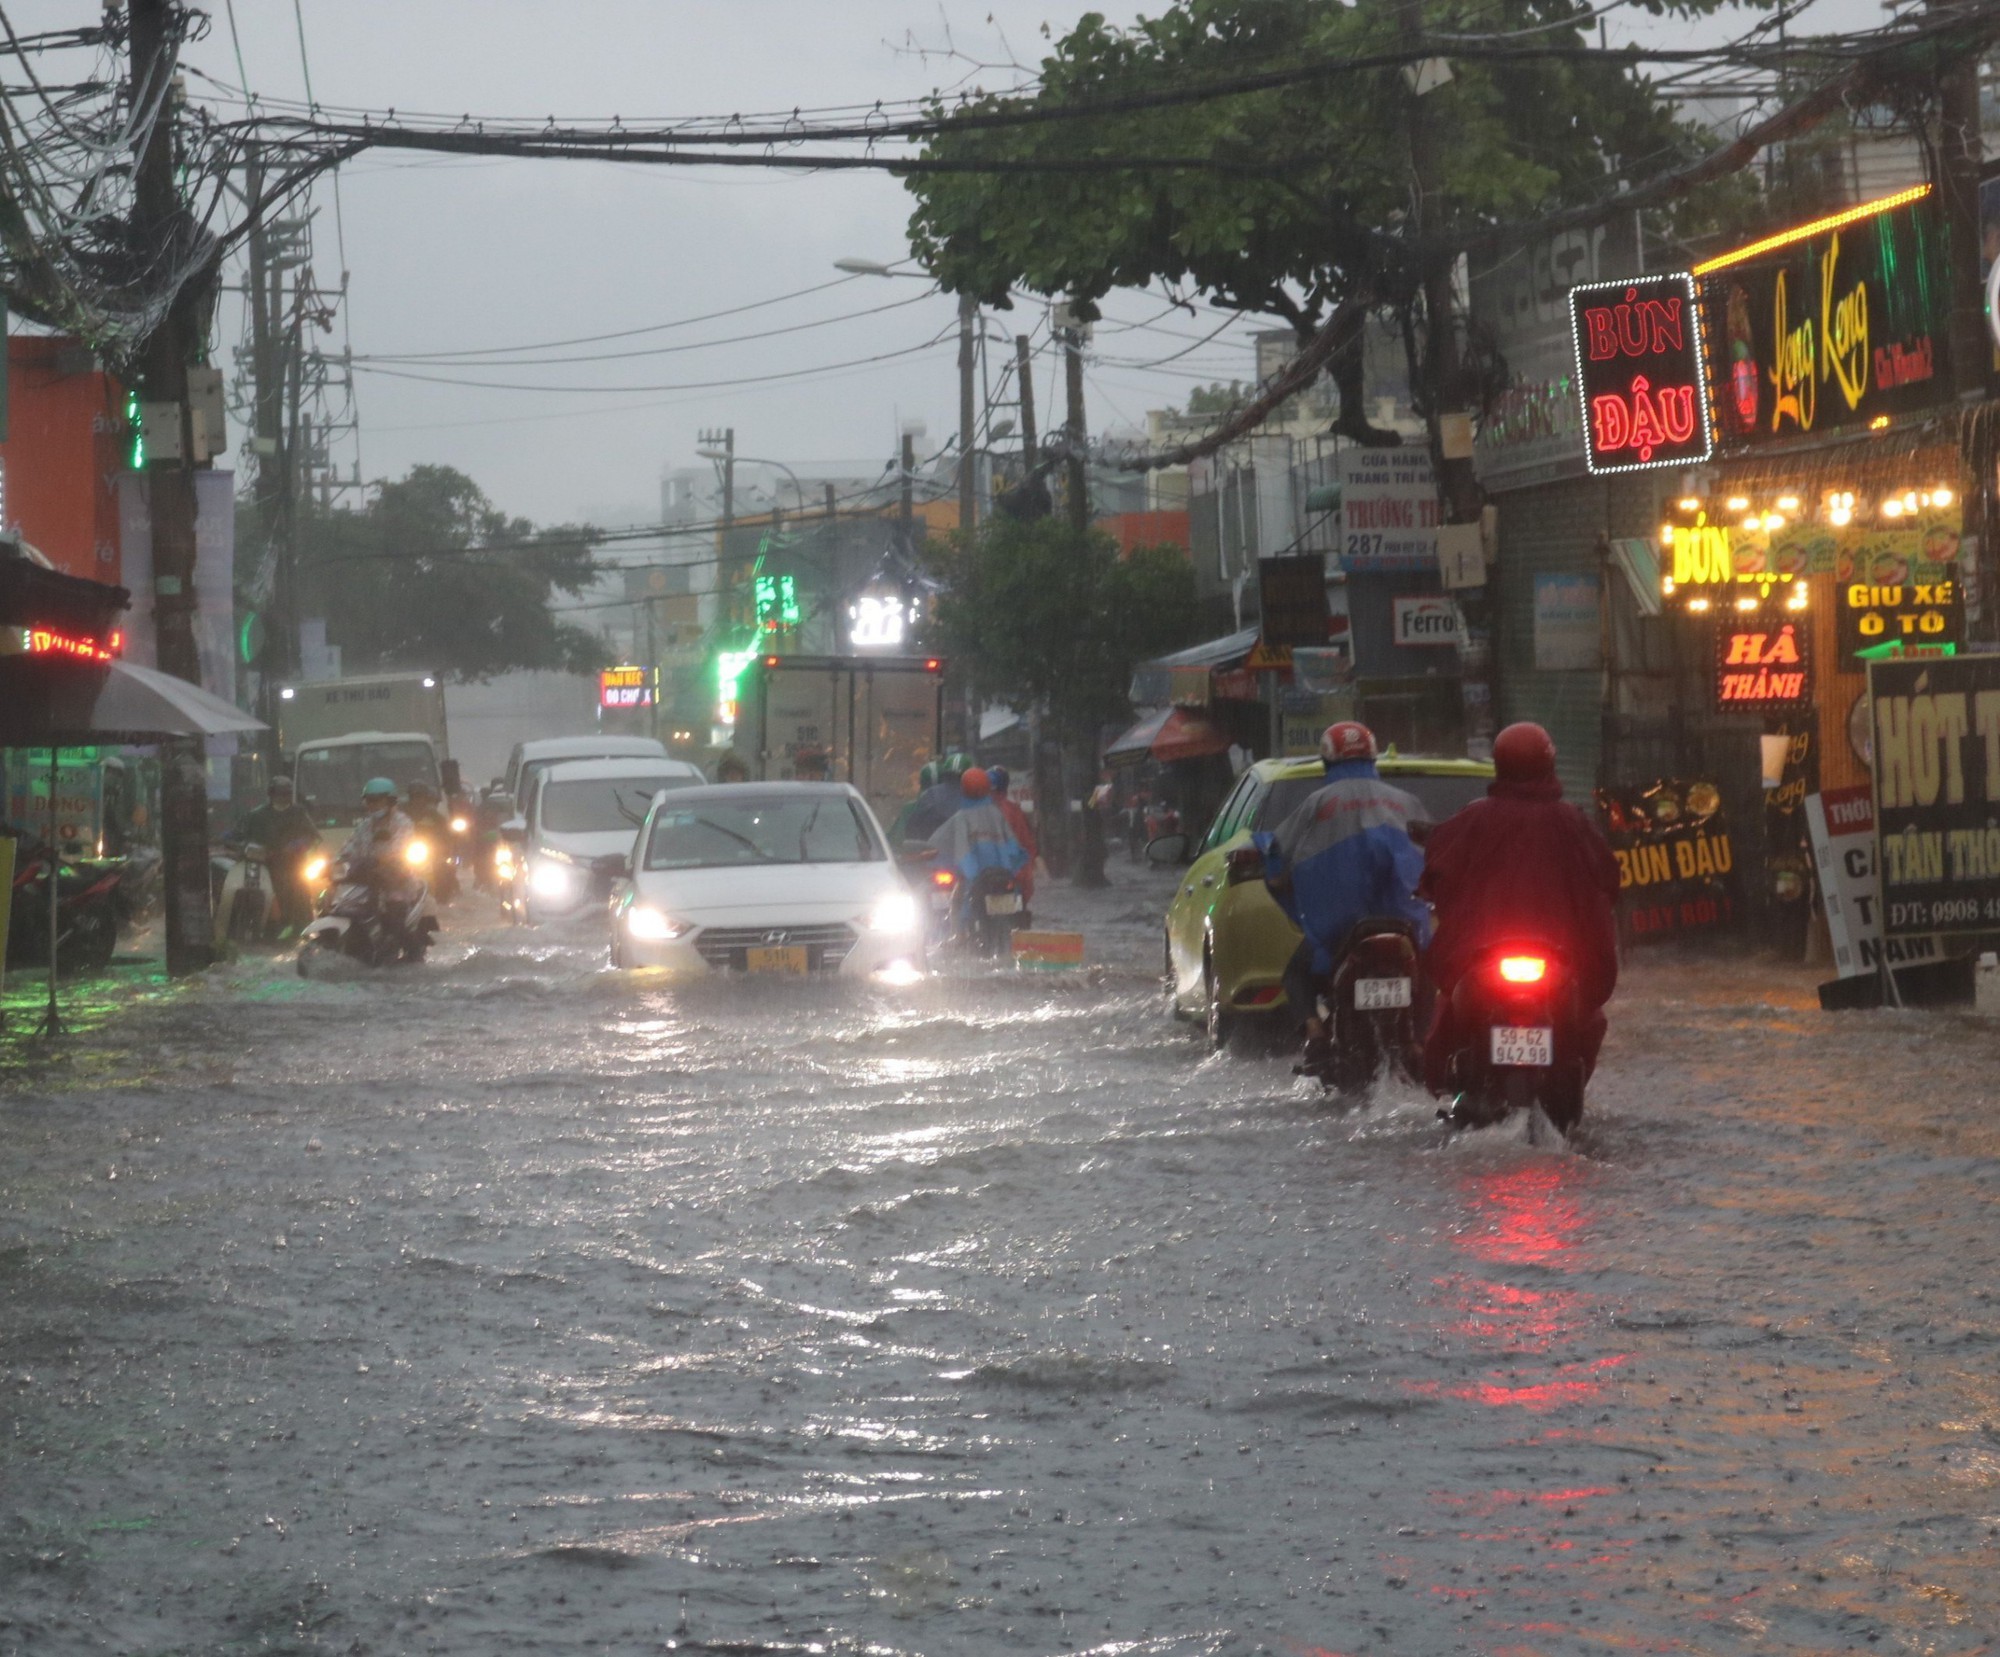 CLIP: TP HCM mưa tối trời, người dân xé nước trên đường - Ảnh 8.